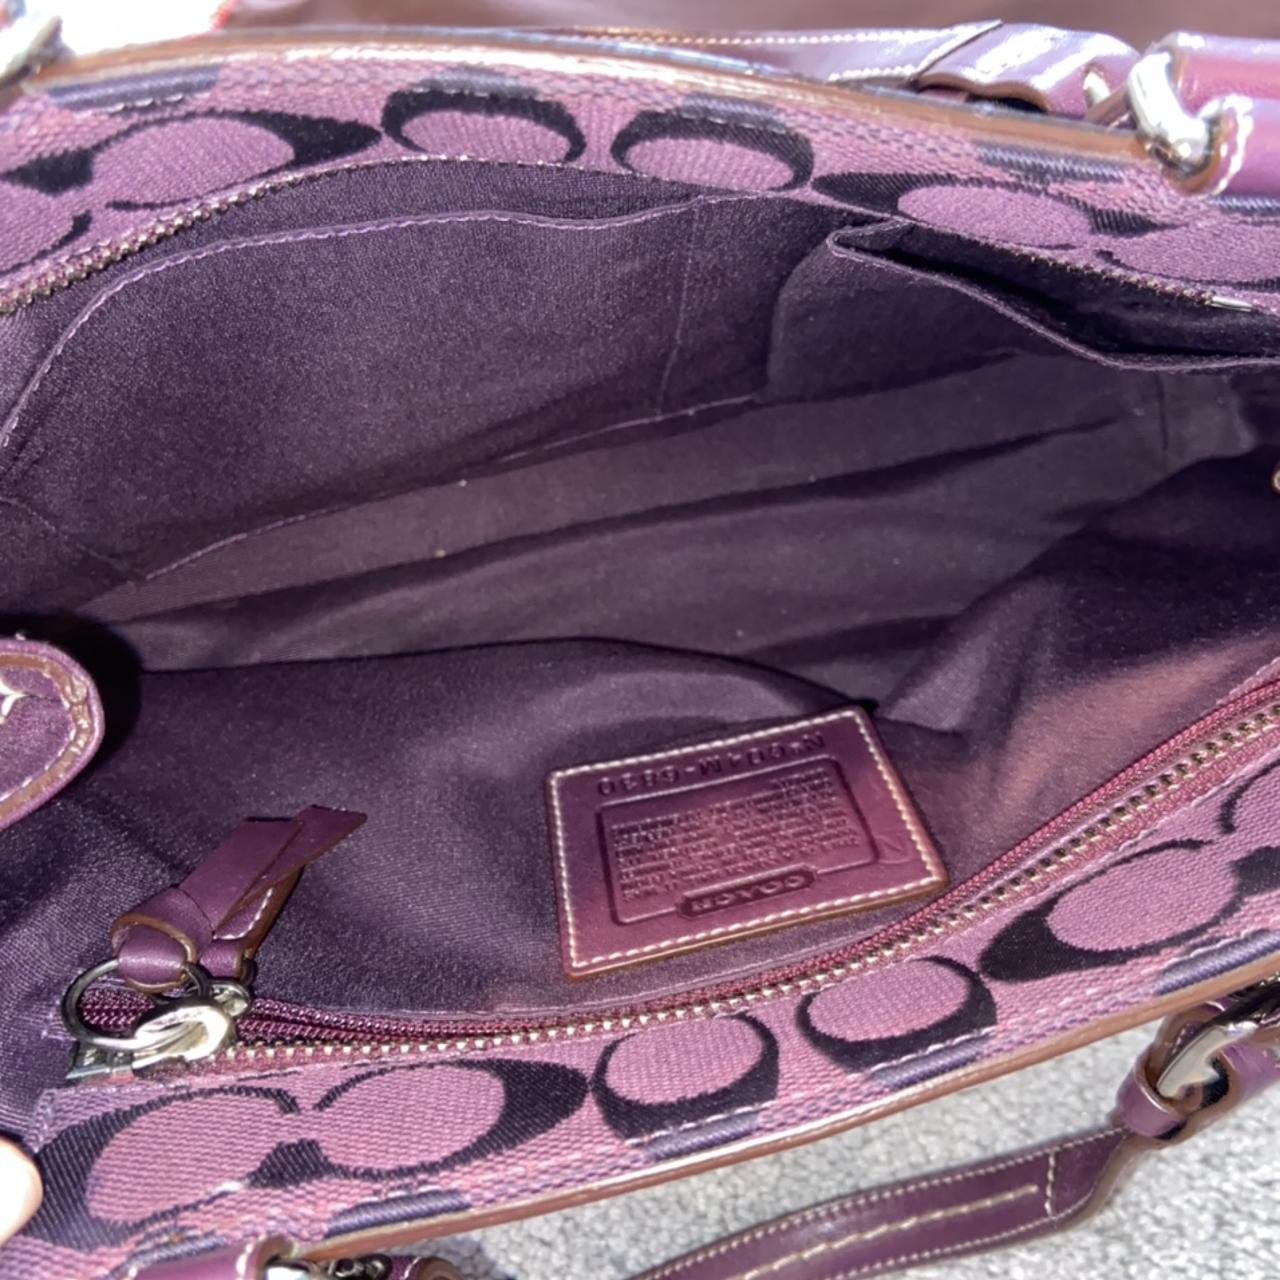 Coach Signature Hand Bag Purse With Original Dustbag... - Depop